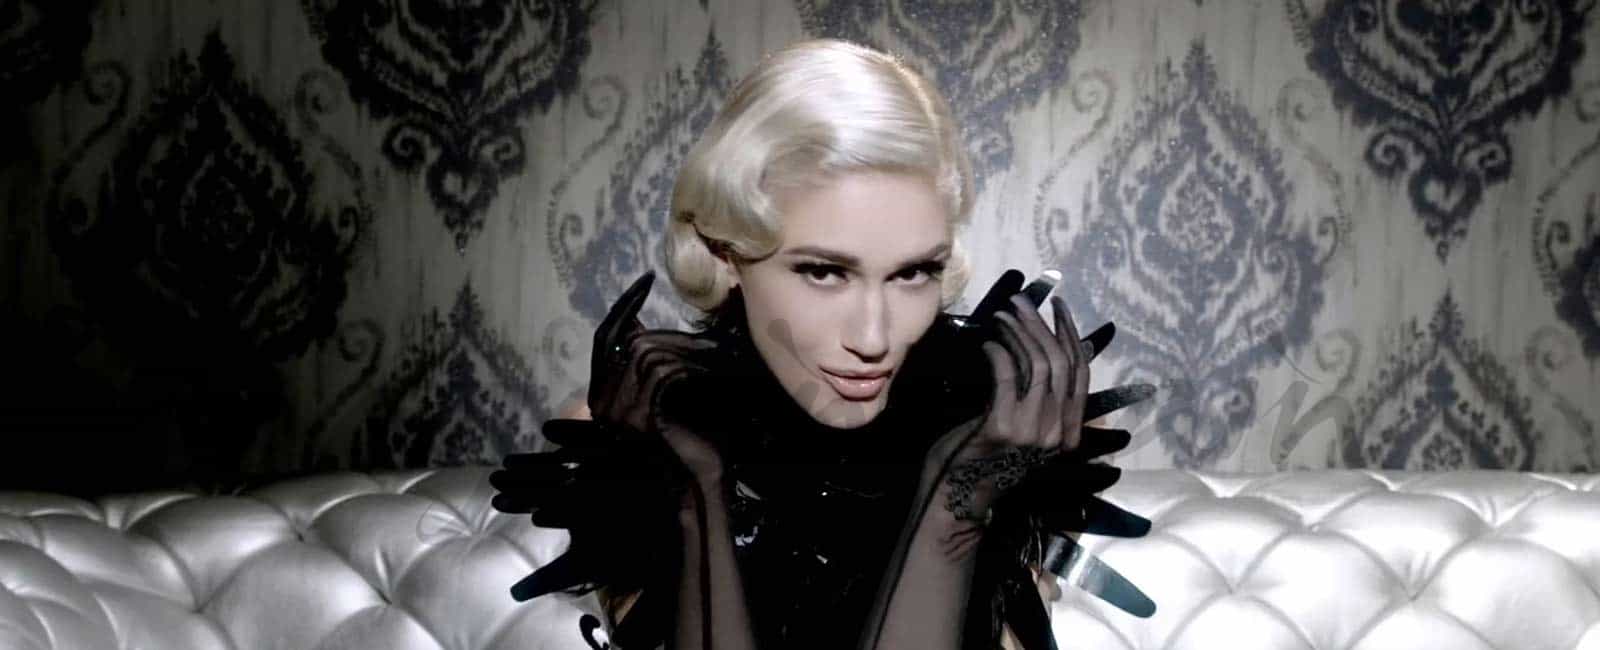 Gwen Stefani estrena videoclip “Misery”, con varios cambios de look